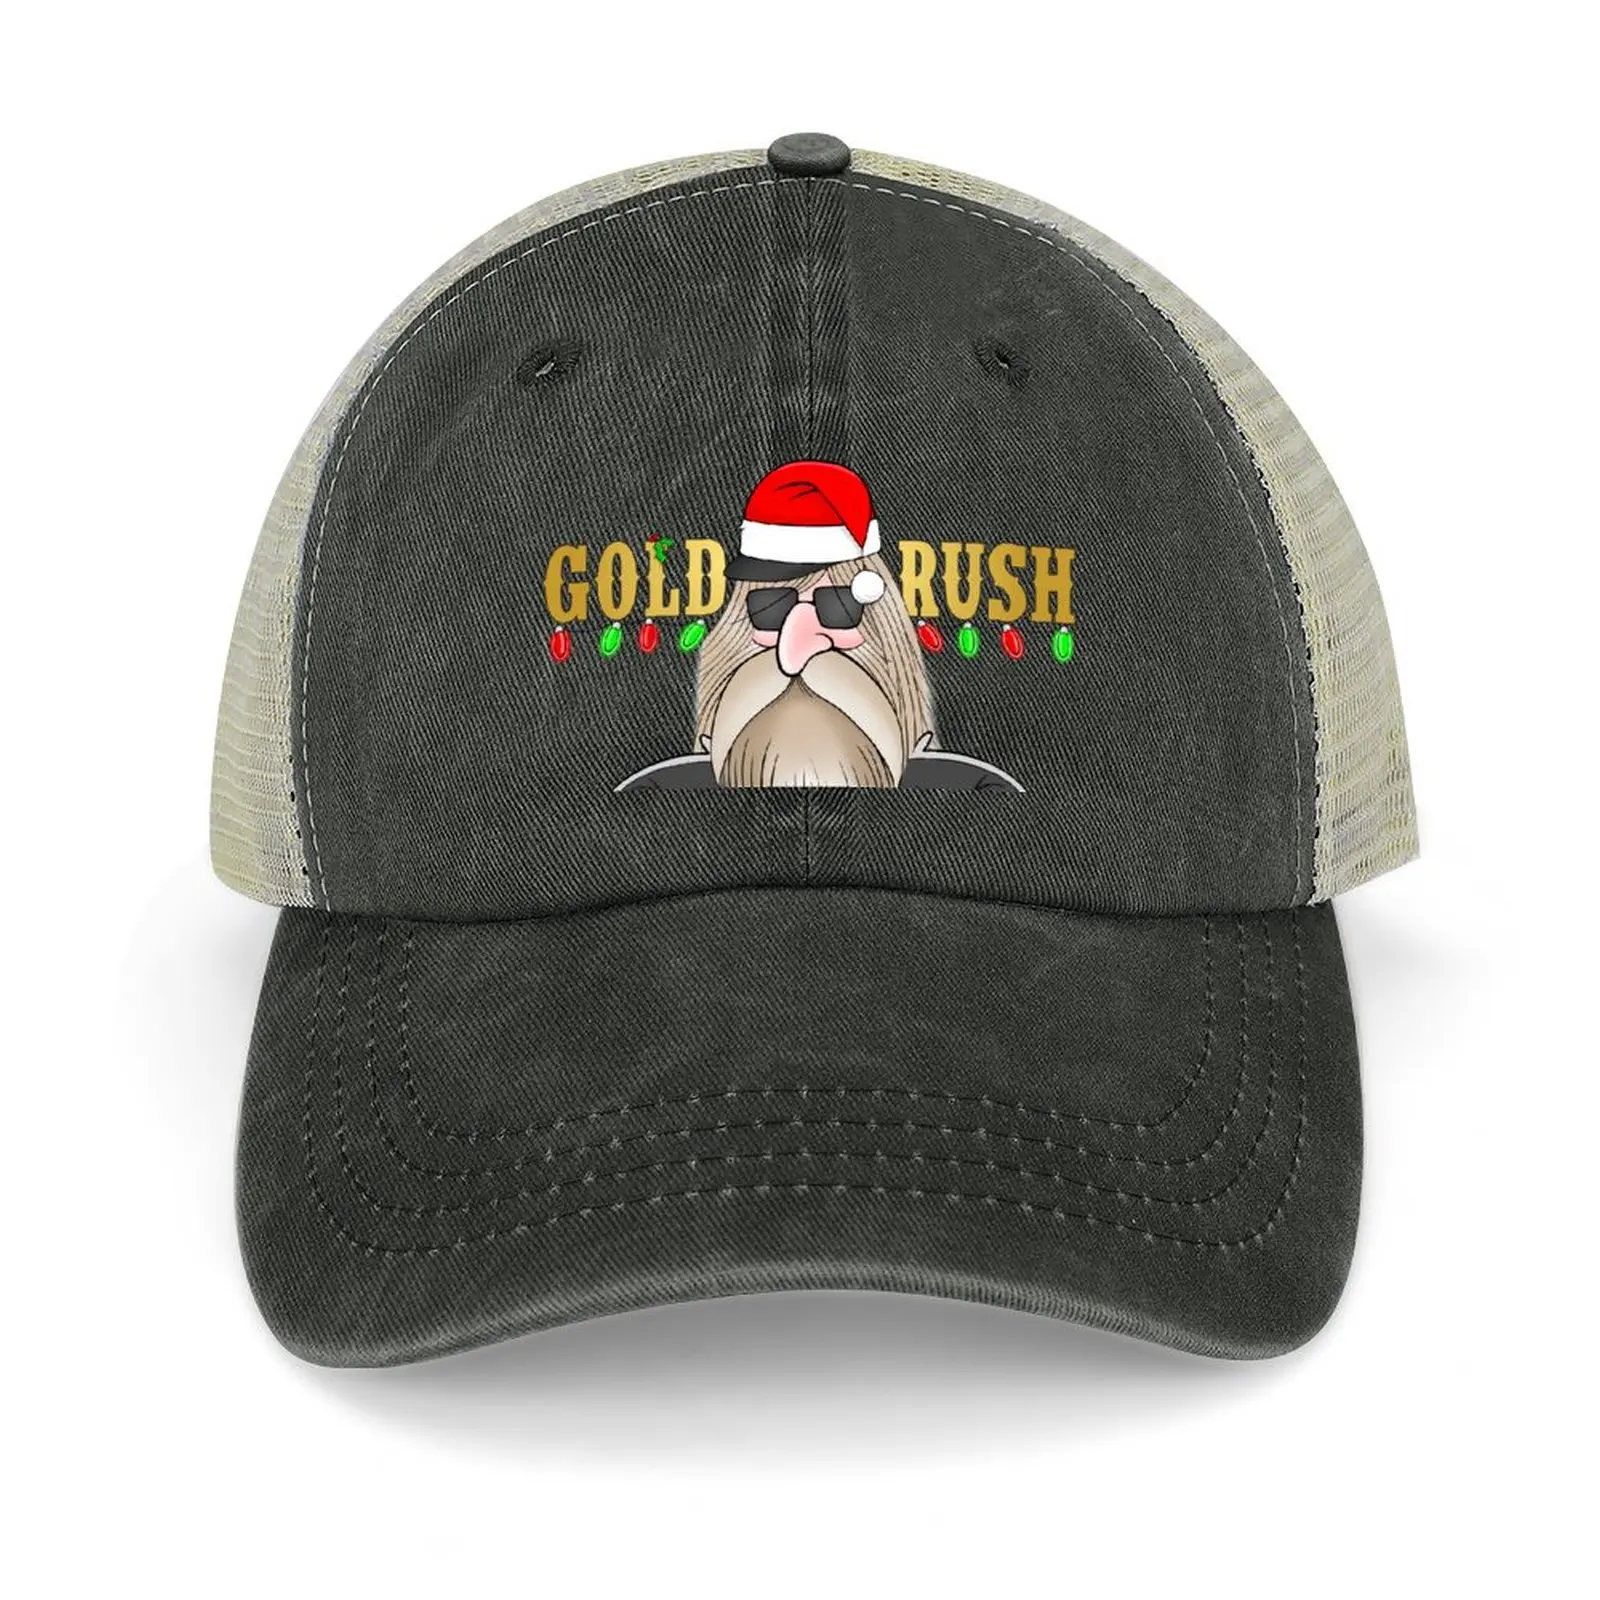 

Tony Beets Gold Rush Cowboy Hat sun hat Sun Cap Luxury Man Hat Women's Beach Outlet Men's